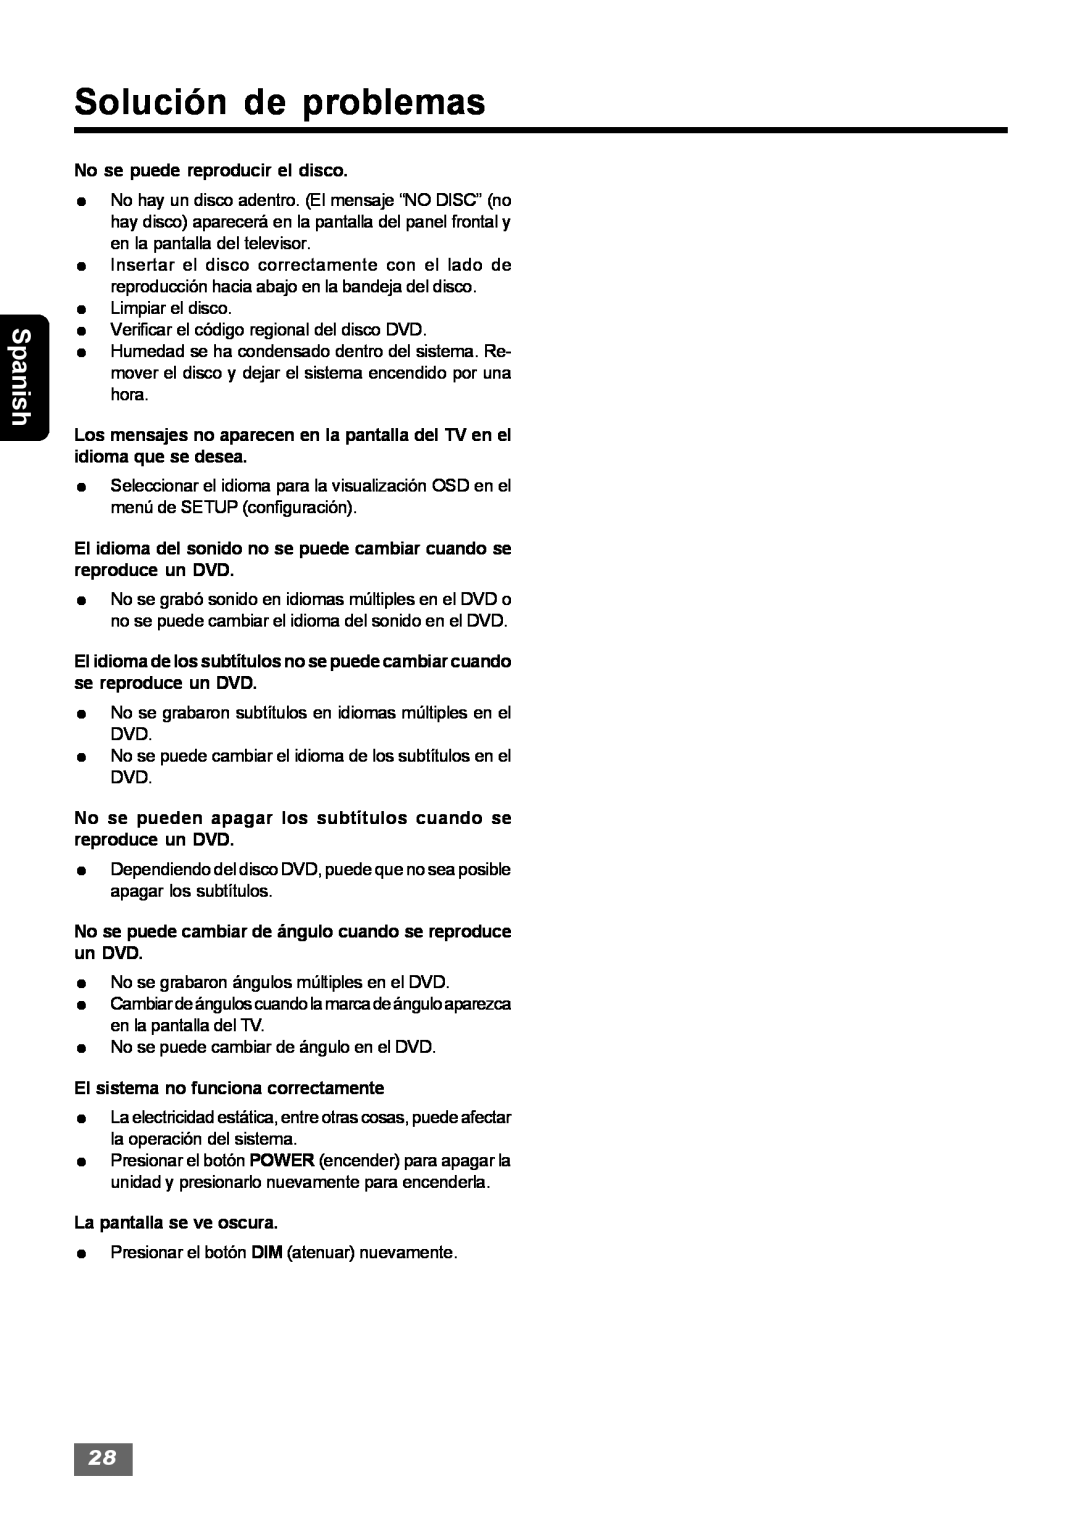 Insignia IS-HTIB102731 owner manual Solución de problemas, Spanish, No se puede reproducir el disco 